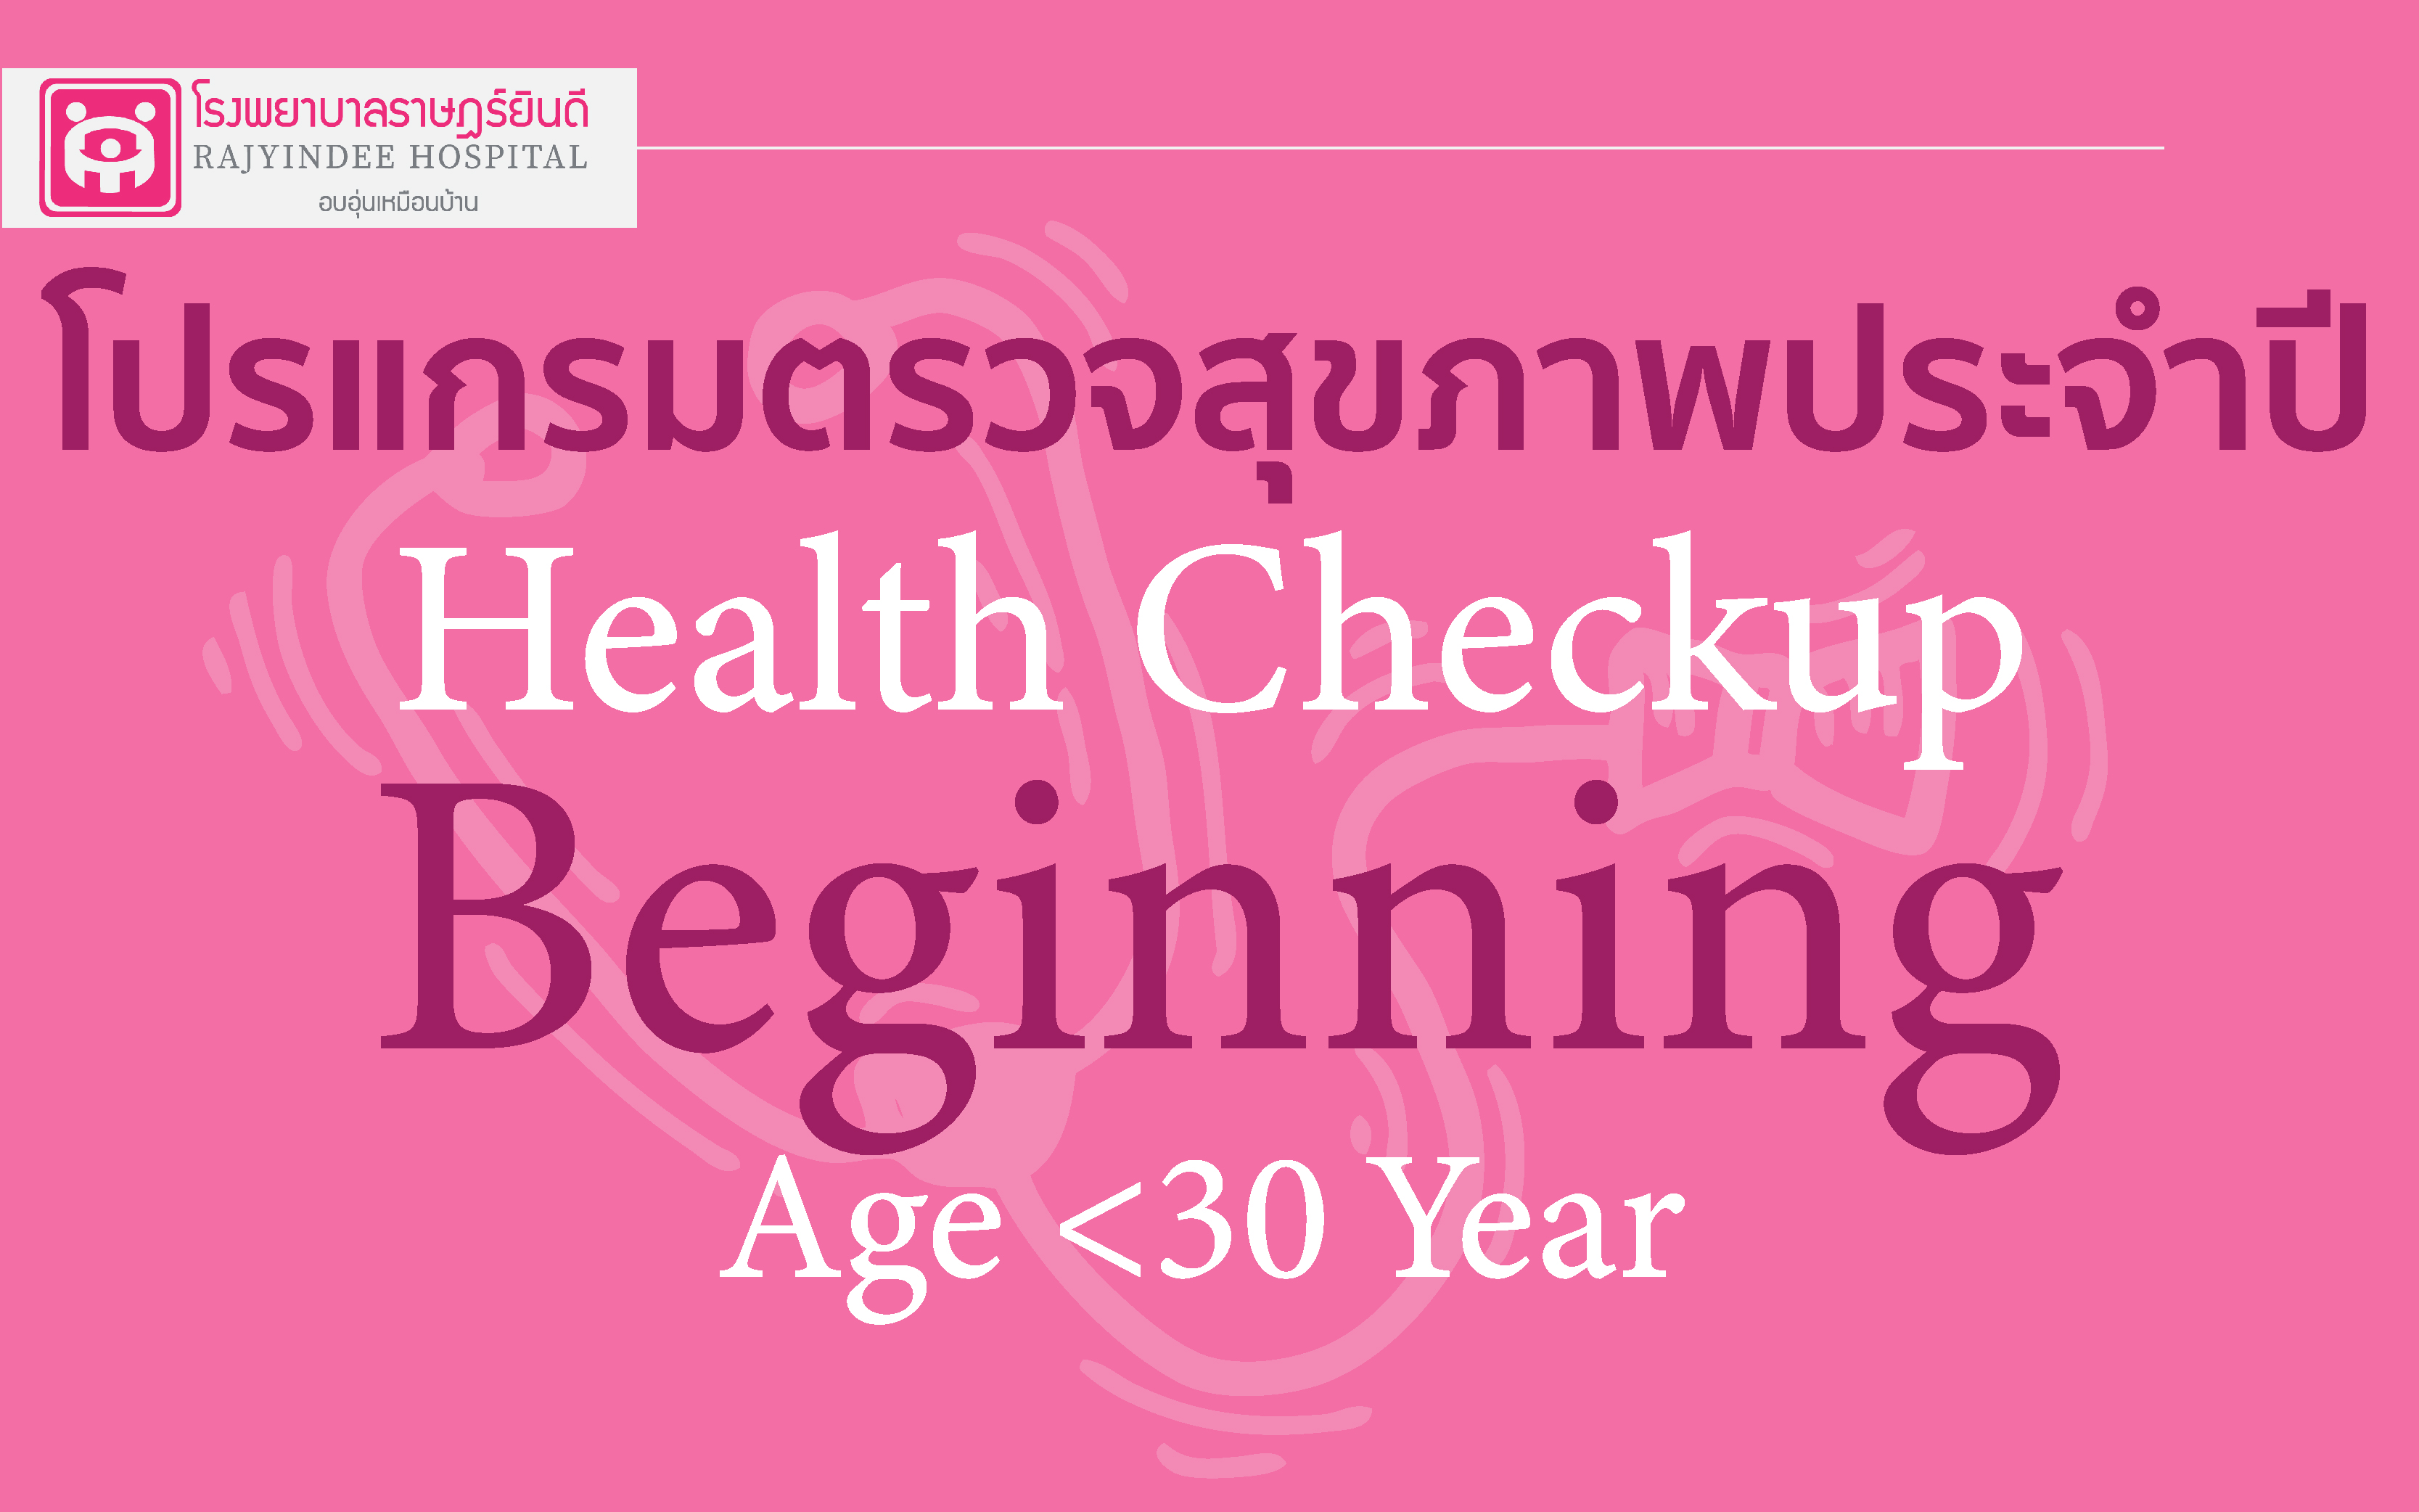 โปรแกรมตรวจสุขภาพ Beginning (อายุต่ำกว่า30 ปี ) 